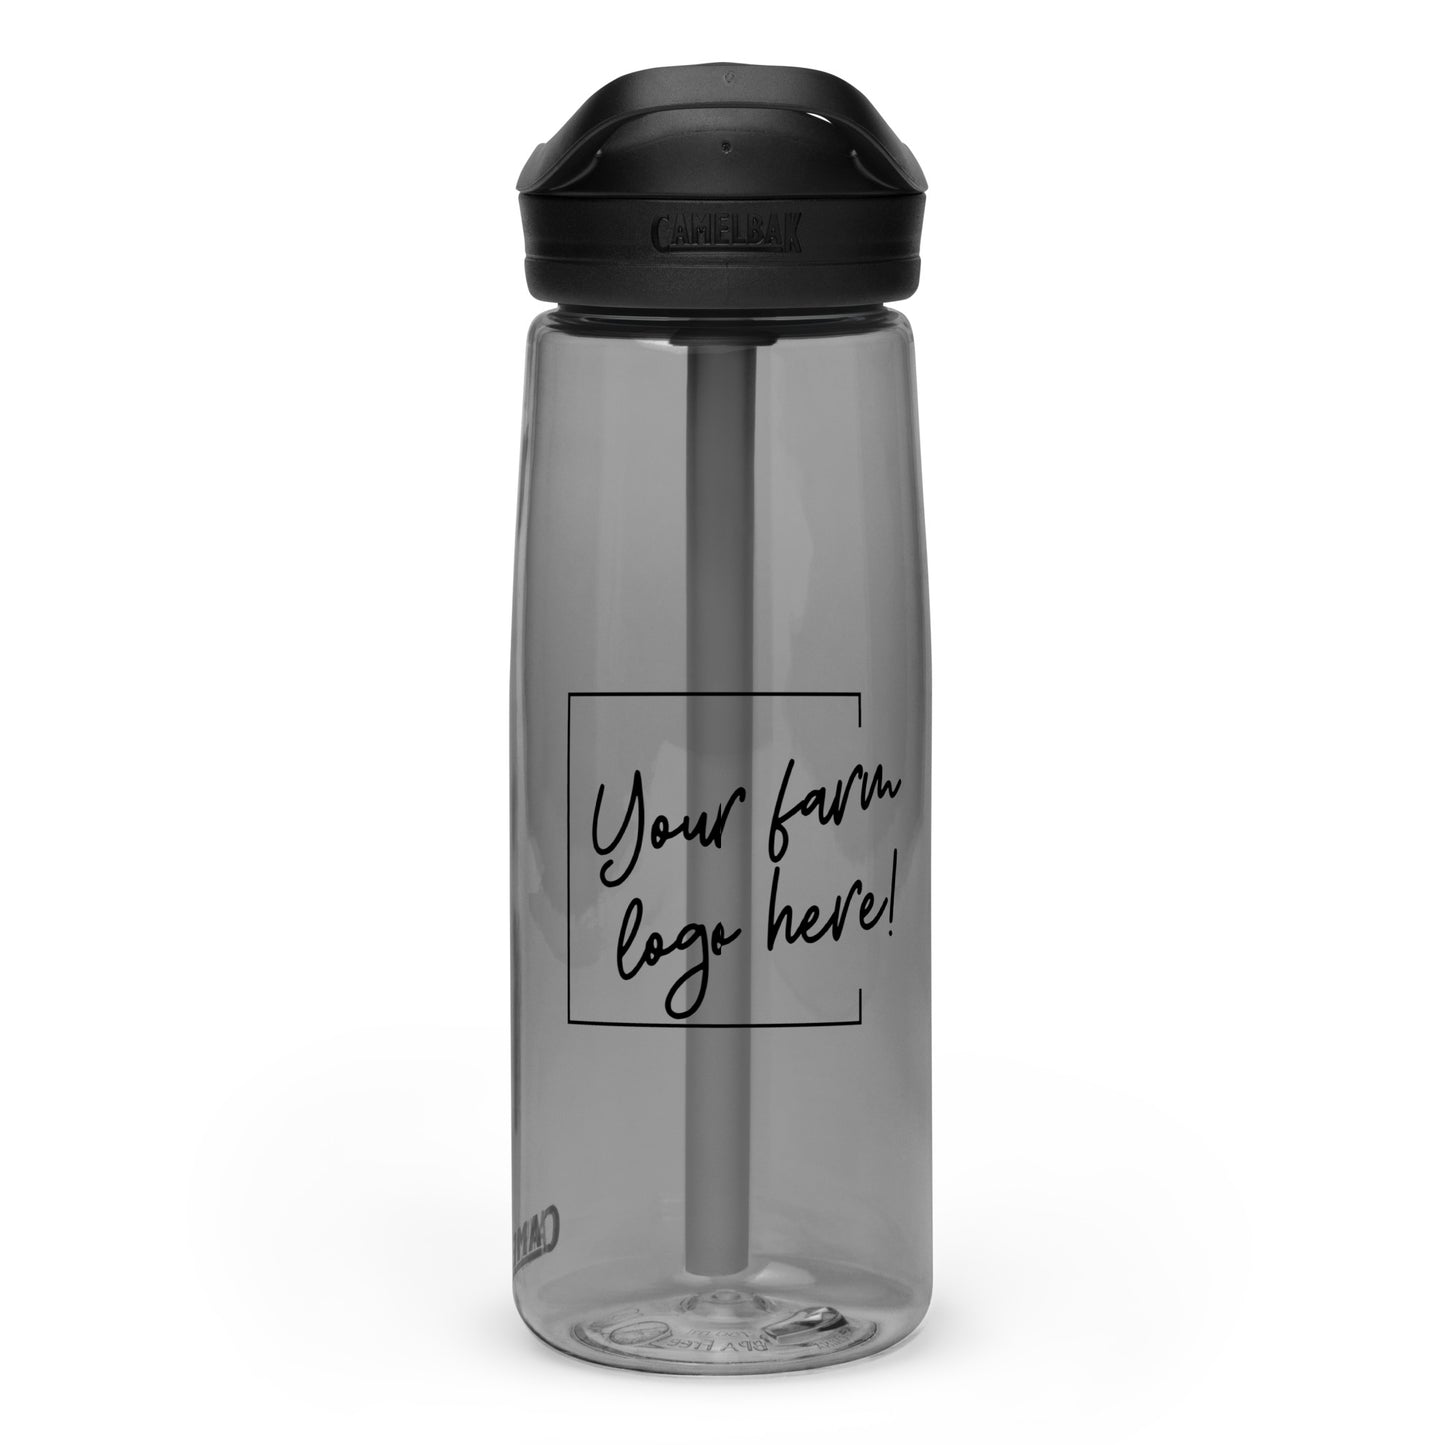 SAMPLE - Sports water bottle